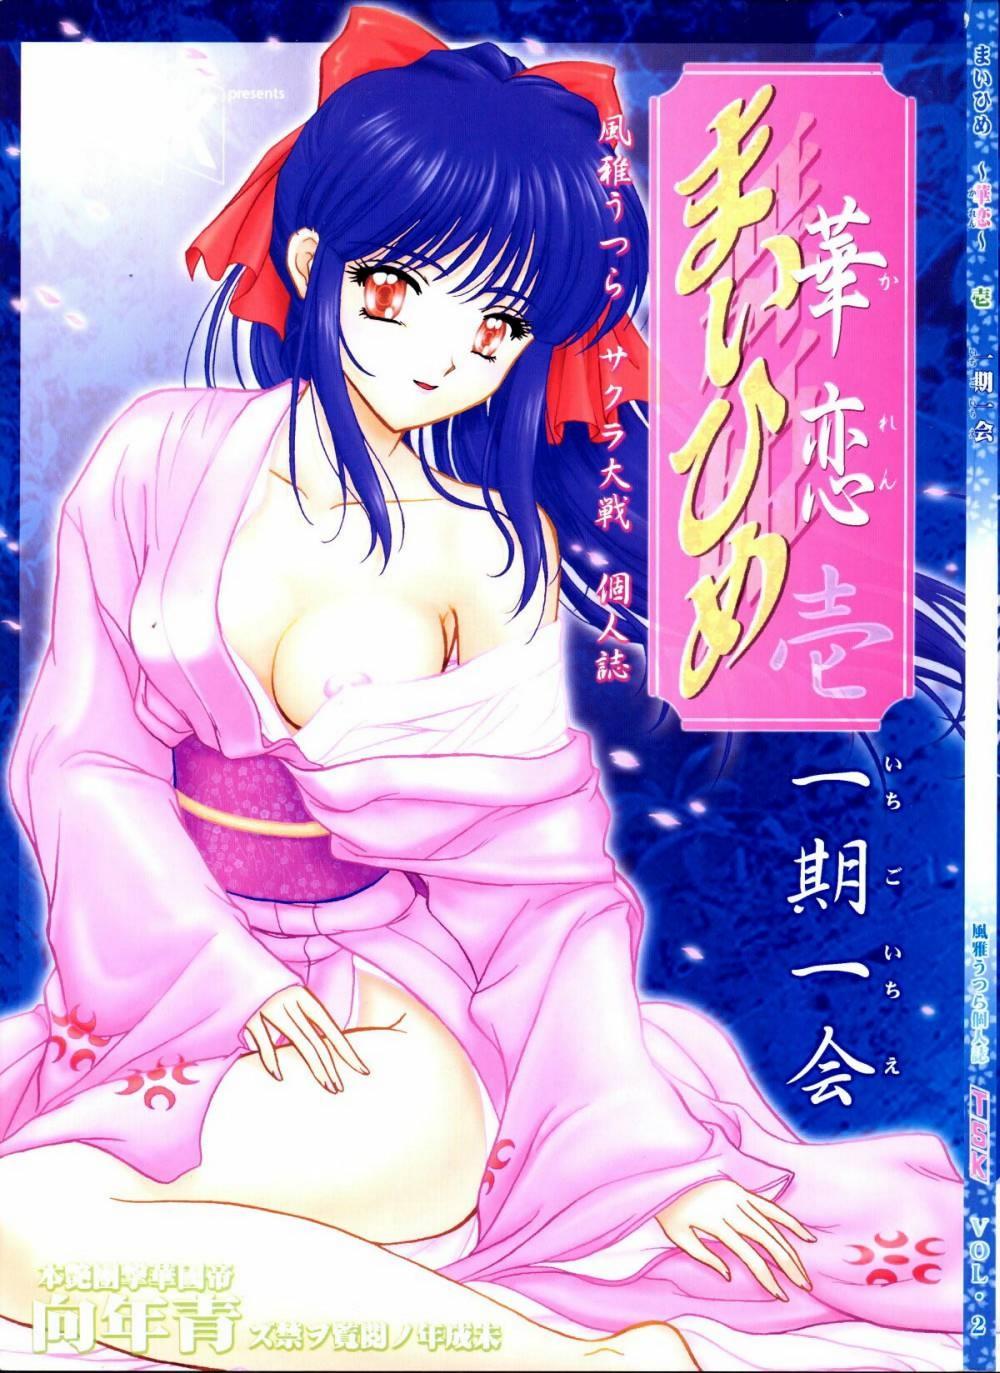 Exibicionismo [TSK] Mai Hime ~Karen~ 1 Ichigo Ichie (Sakura Wars) - Sakura taisen Loira - Page 1